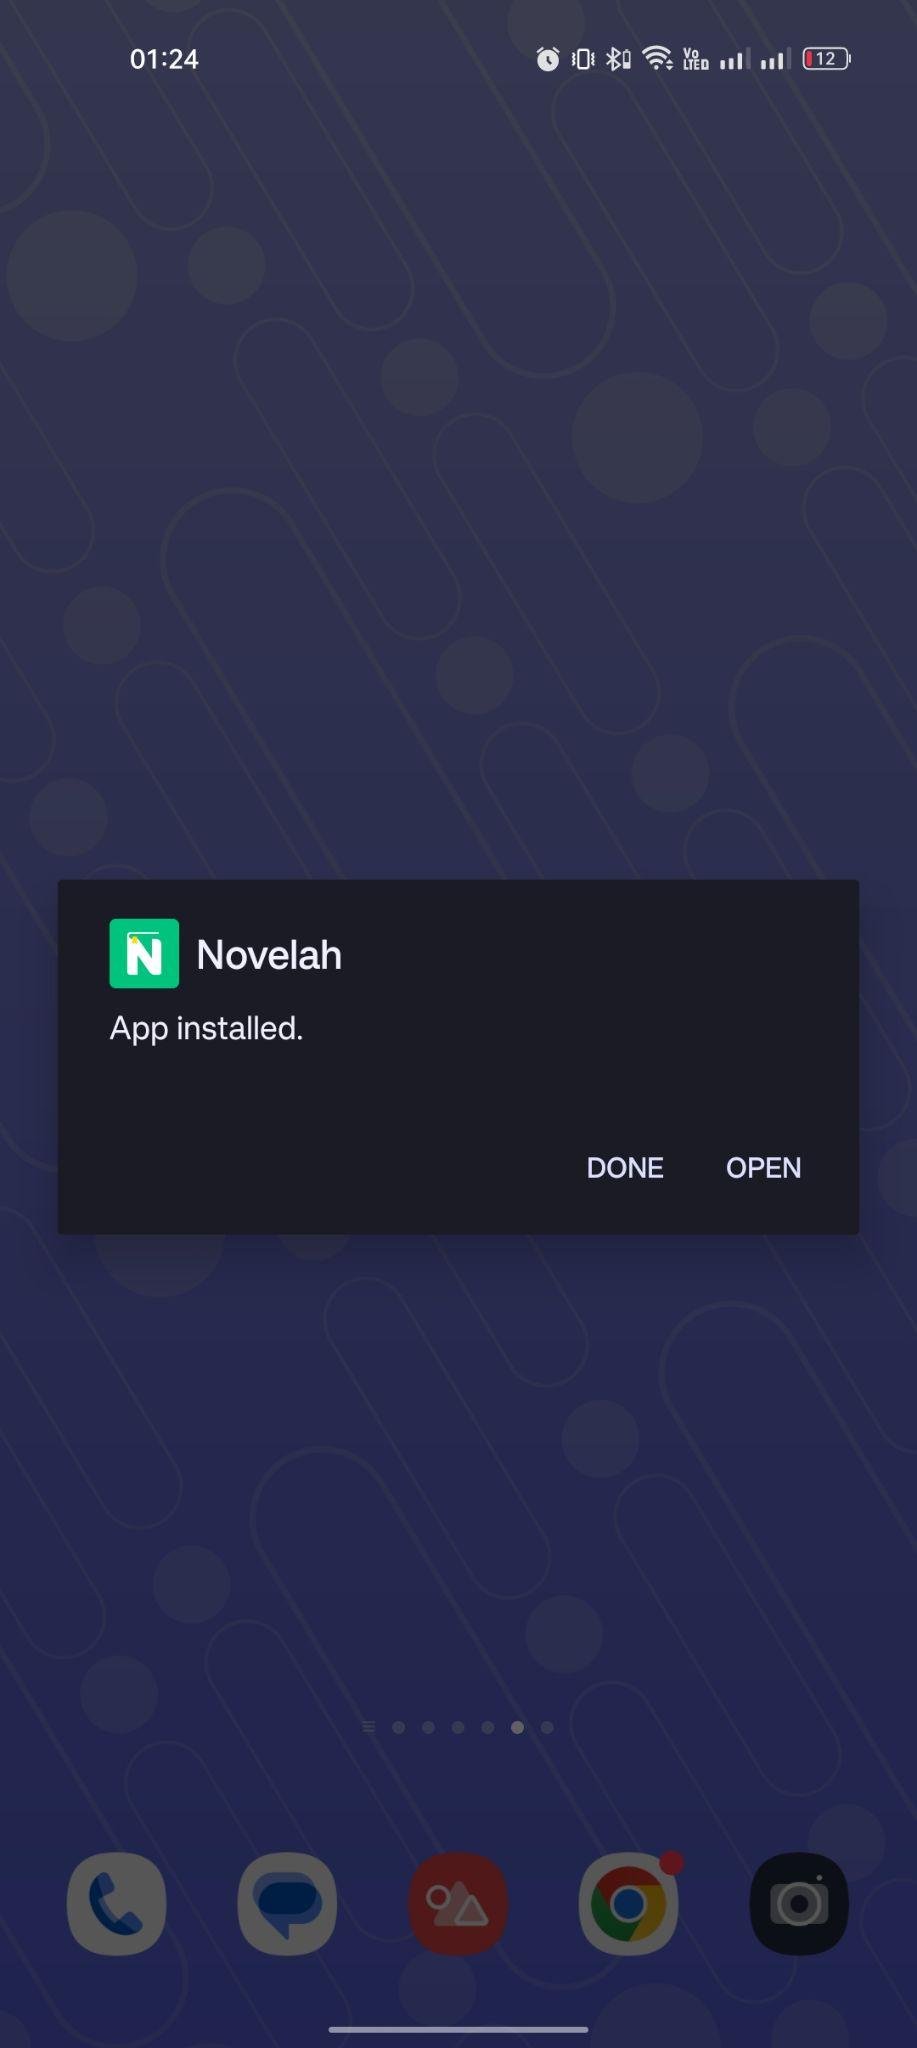 Novelah apk installed